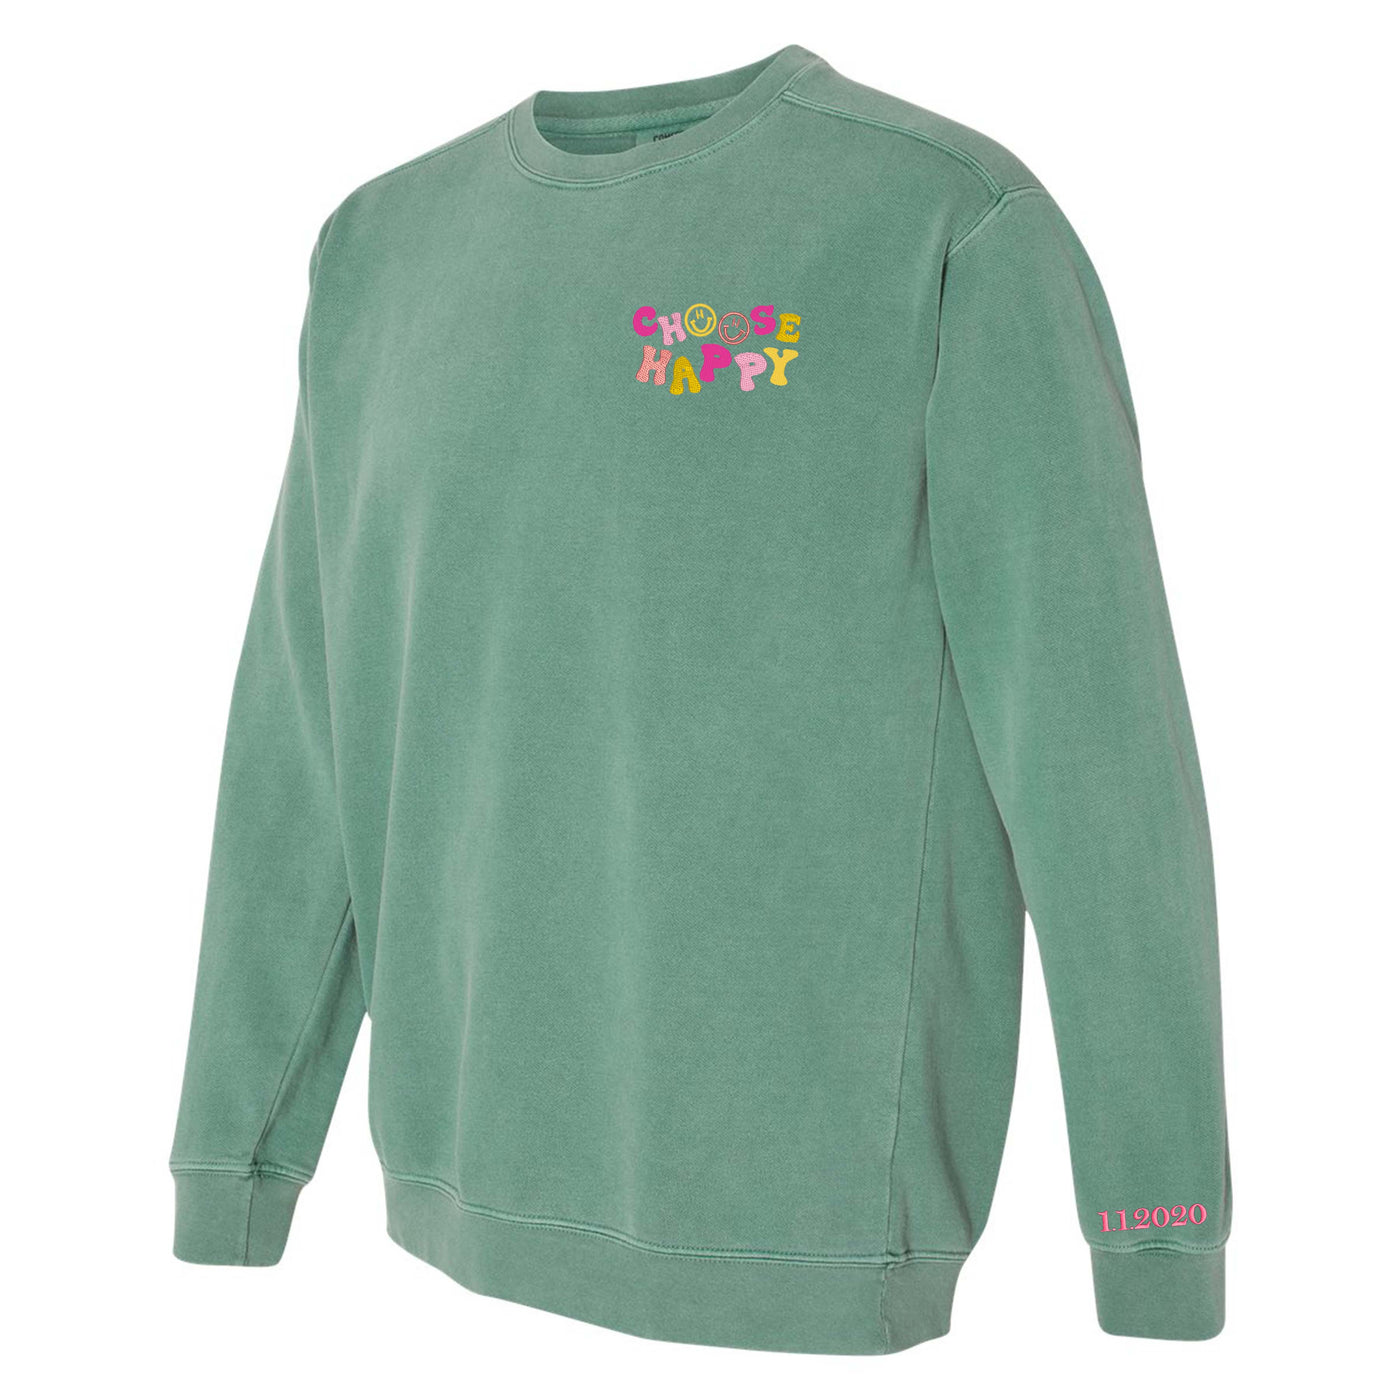 Make it Yours™ 'Choose Happy' Comfort Colors Sweatshirt